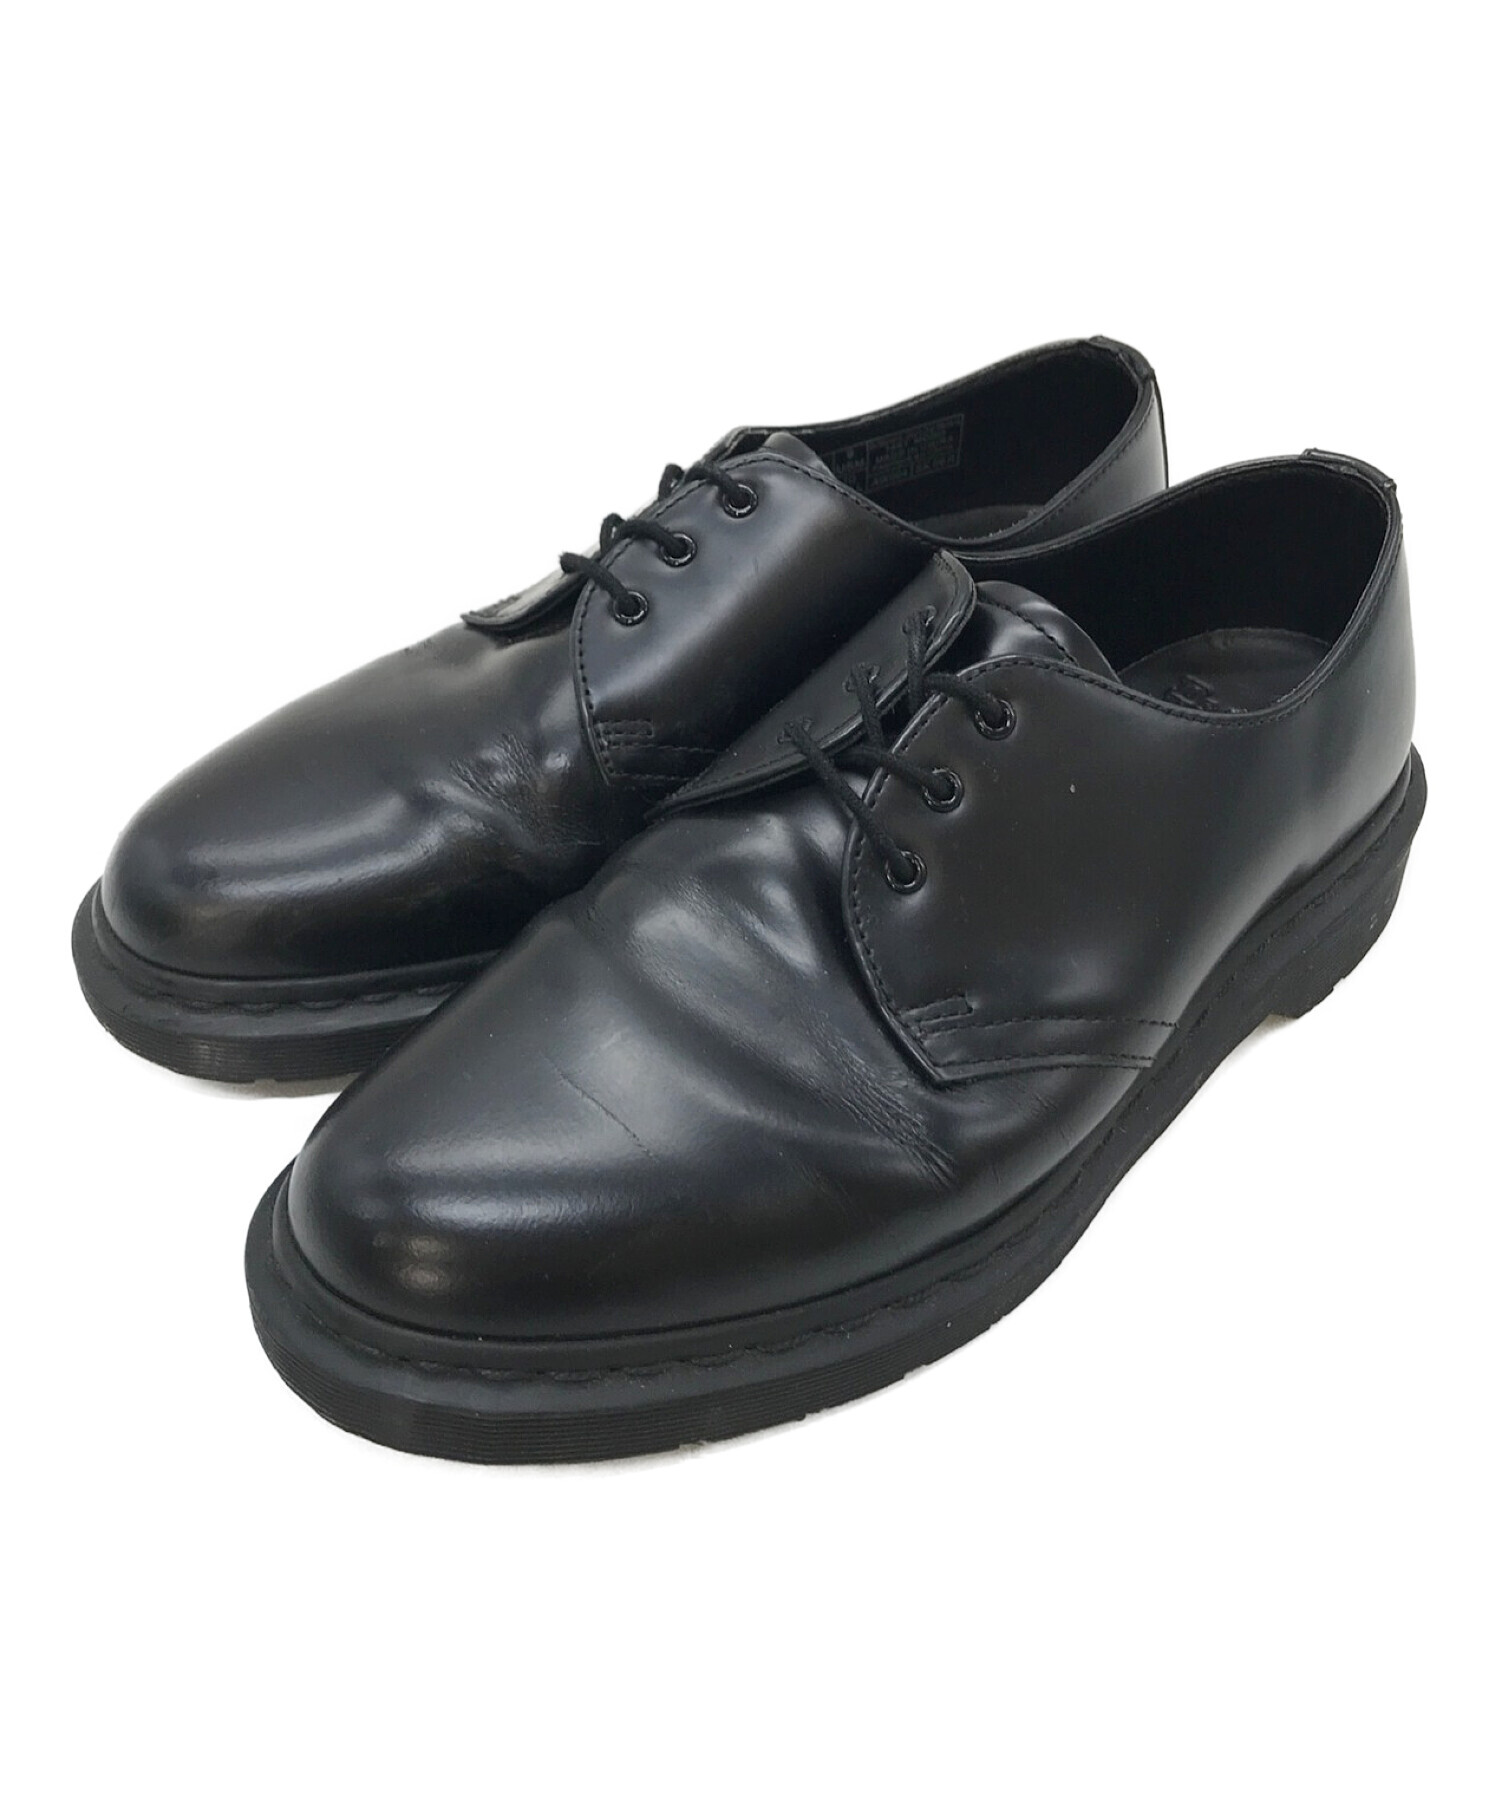 ドクターマーチン 1461 MONO 3ホールシューズ 27cm(UK8) - 靴